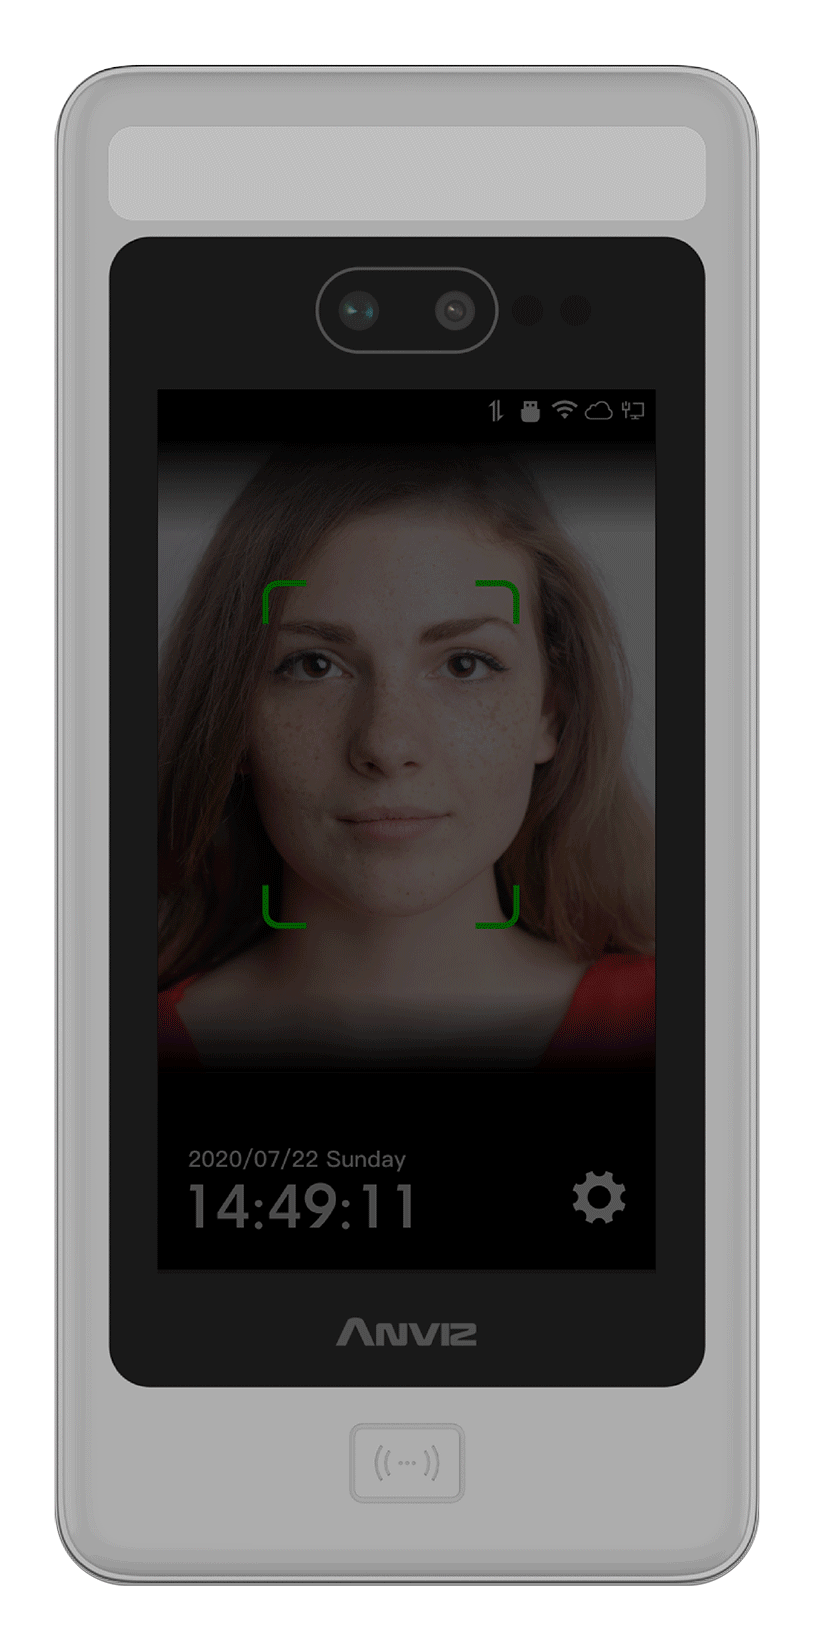  Anviz FaceDeep 5 controllo accessi riconoscimento facciale in assenza  di luce